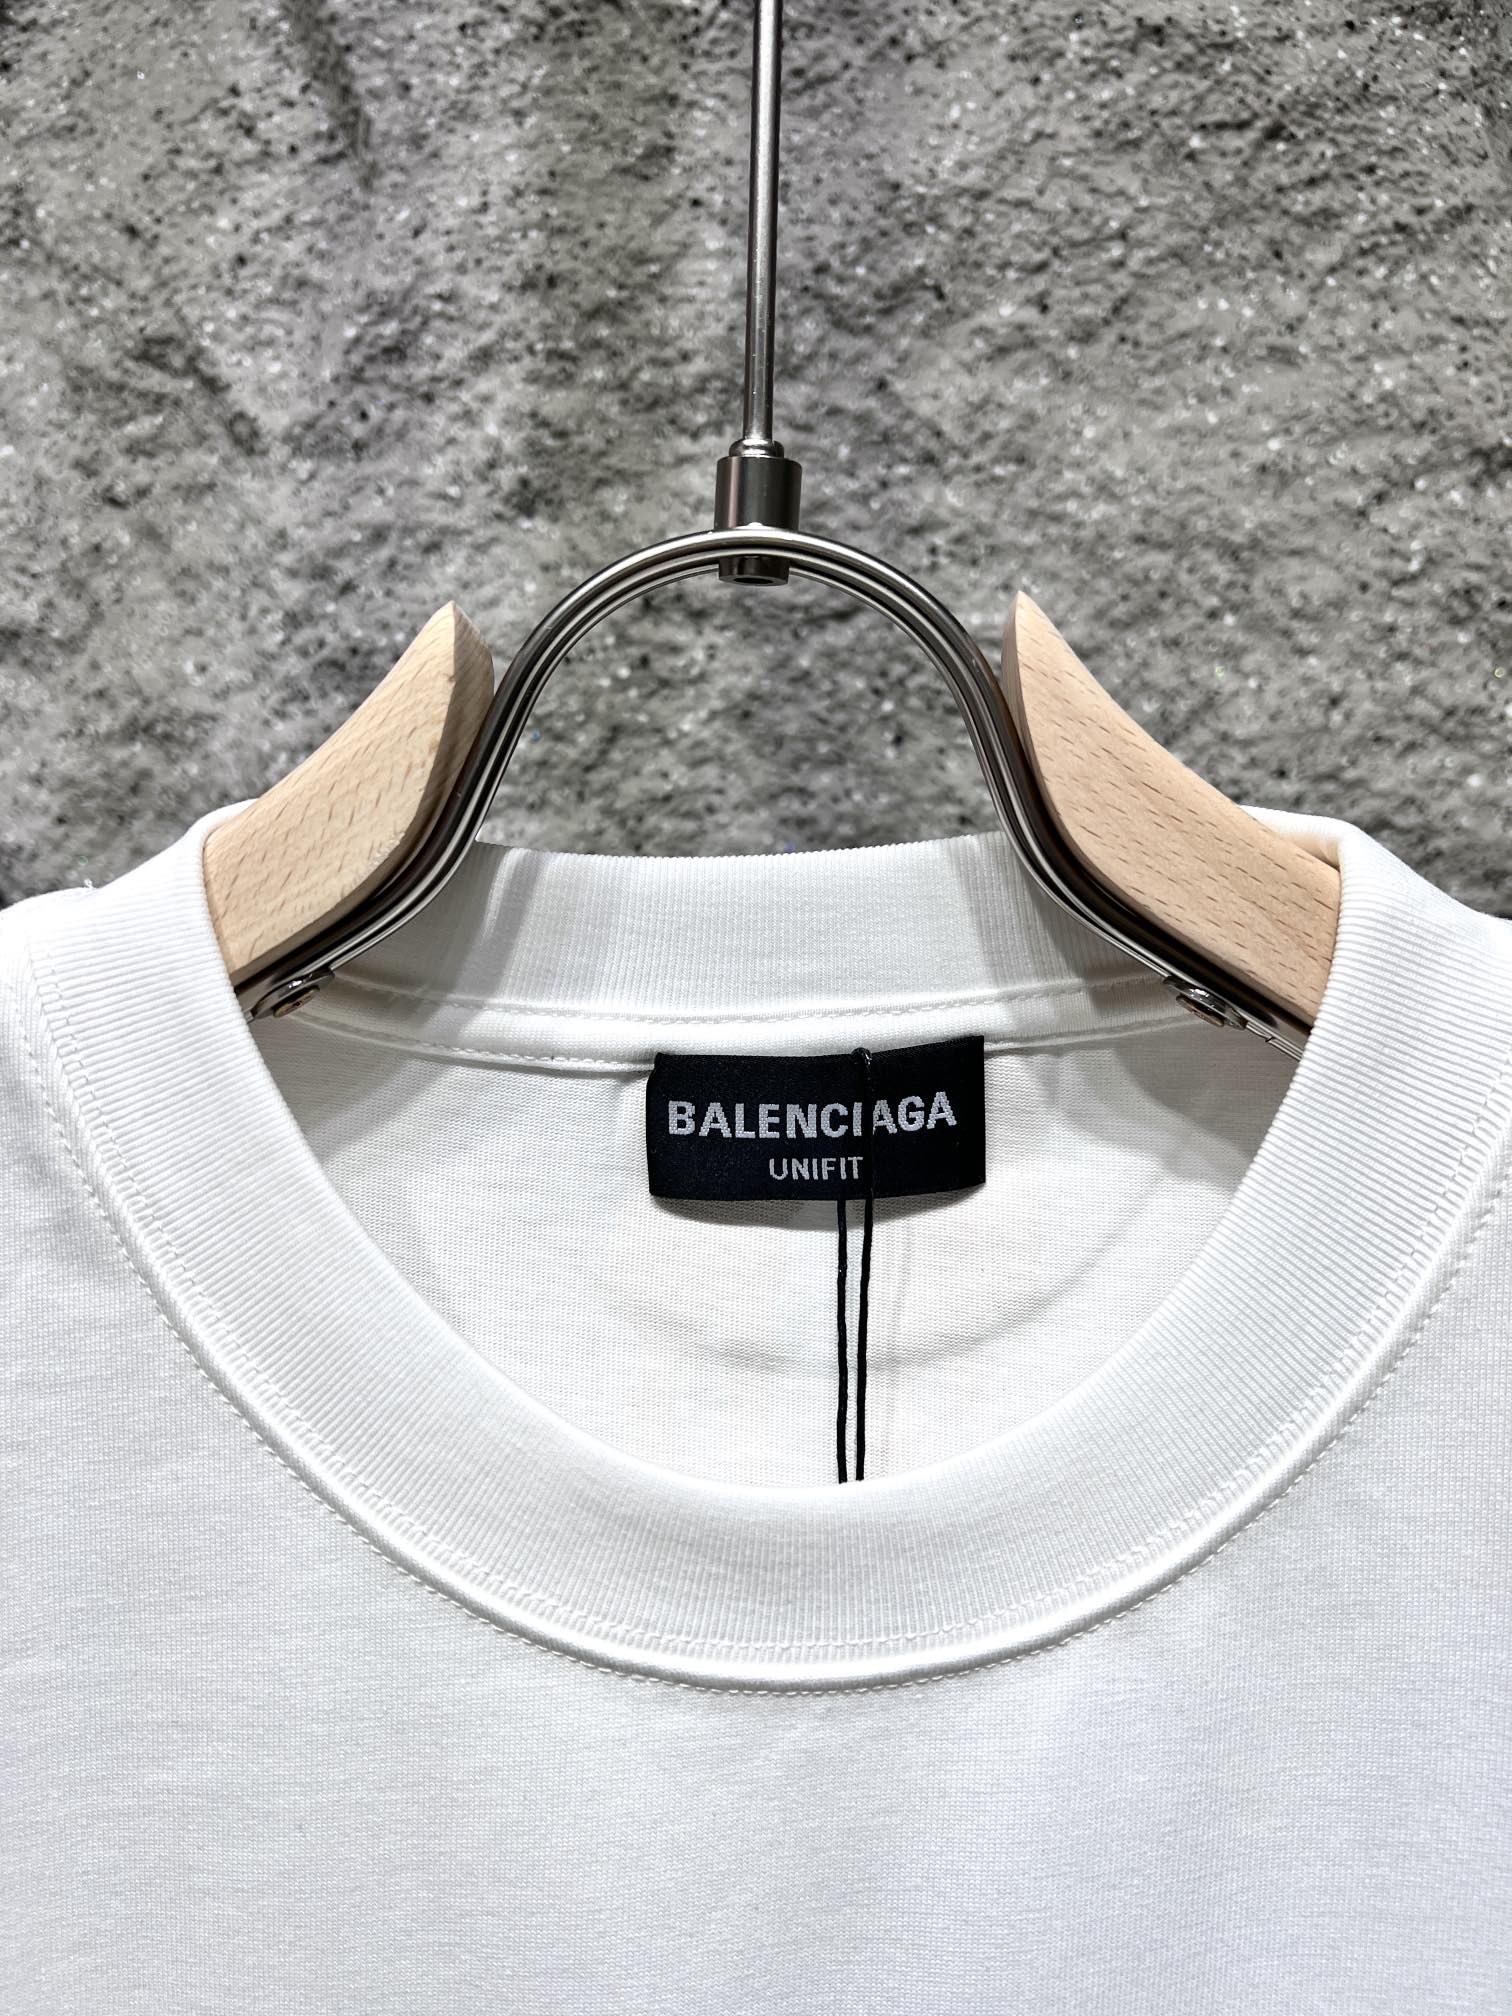 バレンシアガトップスコピー 大人気でお買い得なトップス 個性的Tシャツ 純綿 品質保証 柔らかい ホワイト_2